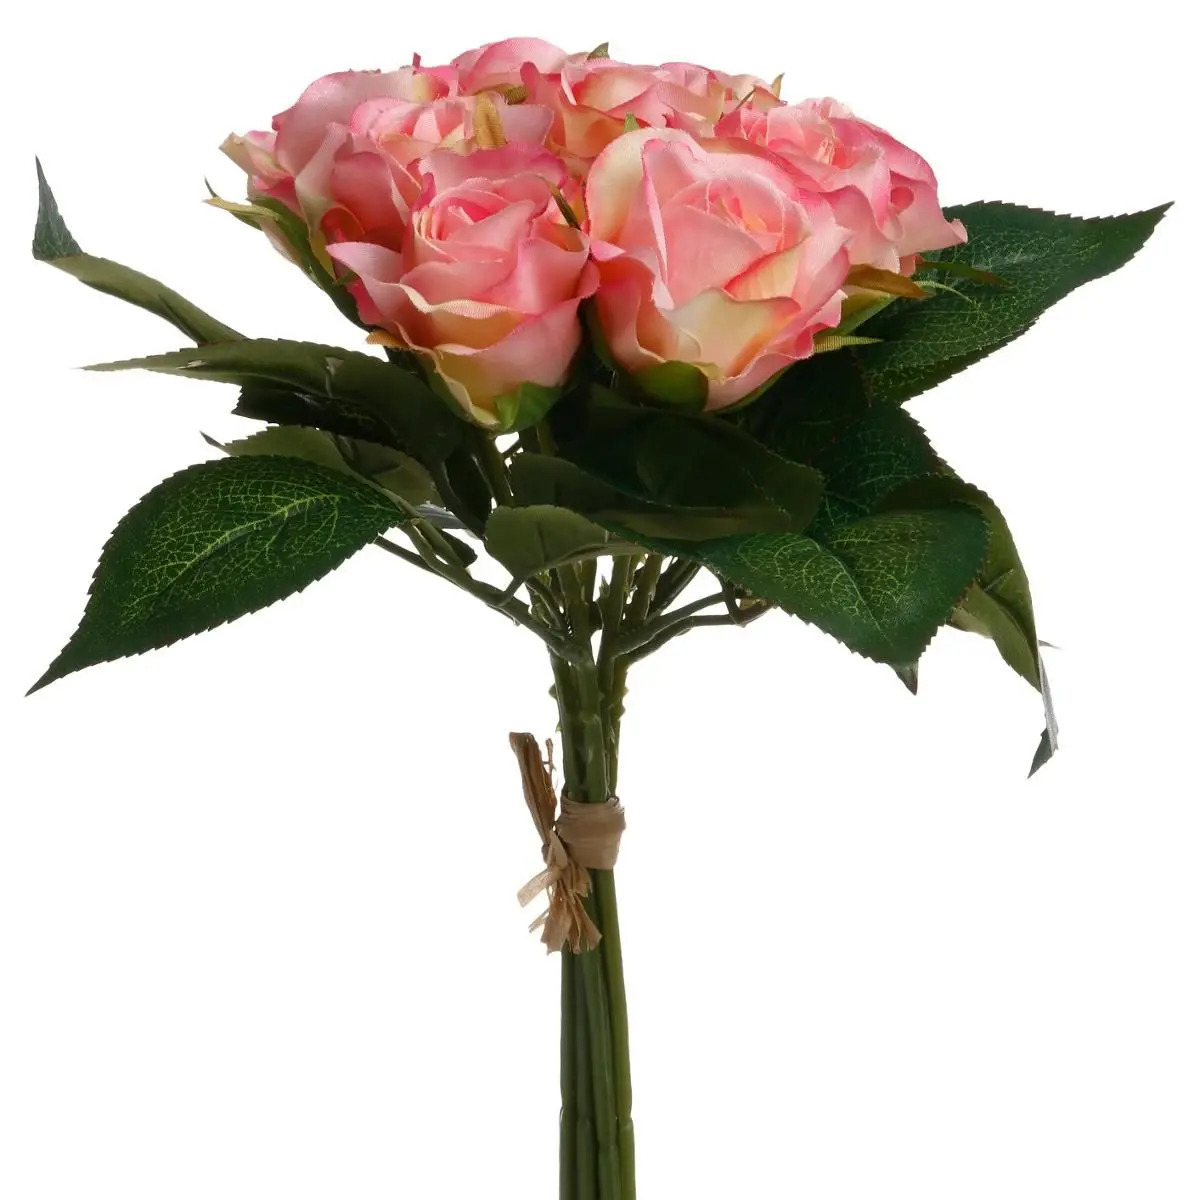 Atmosphera kunstbloemen boeket 9 roze rozen 24 cm